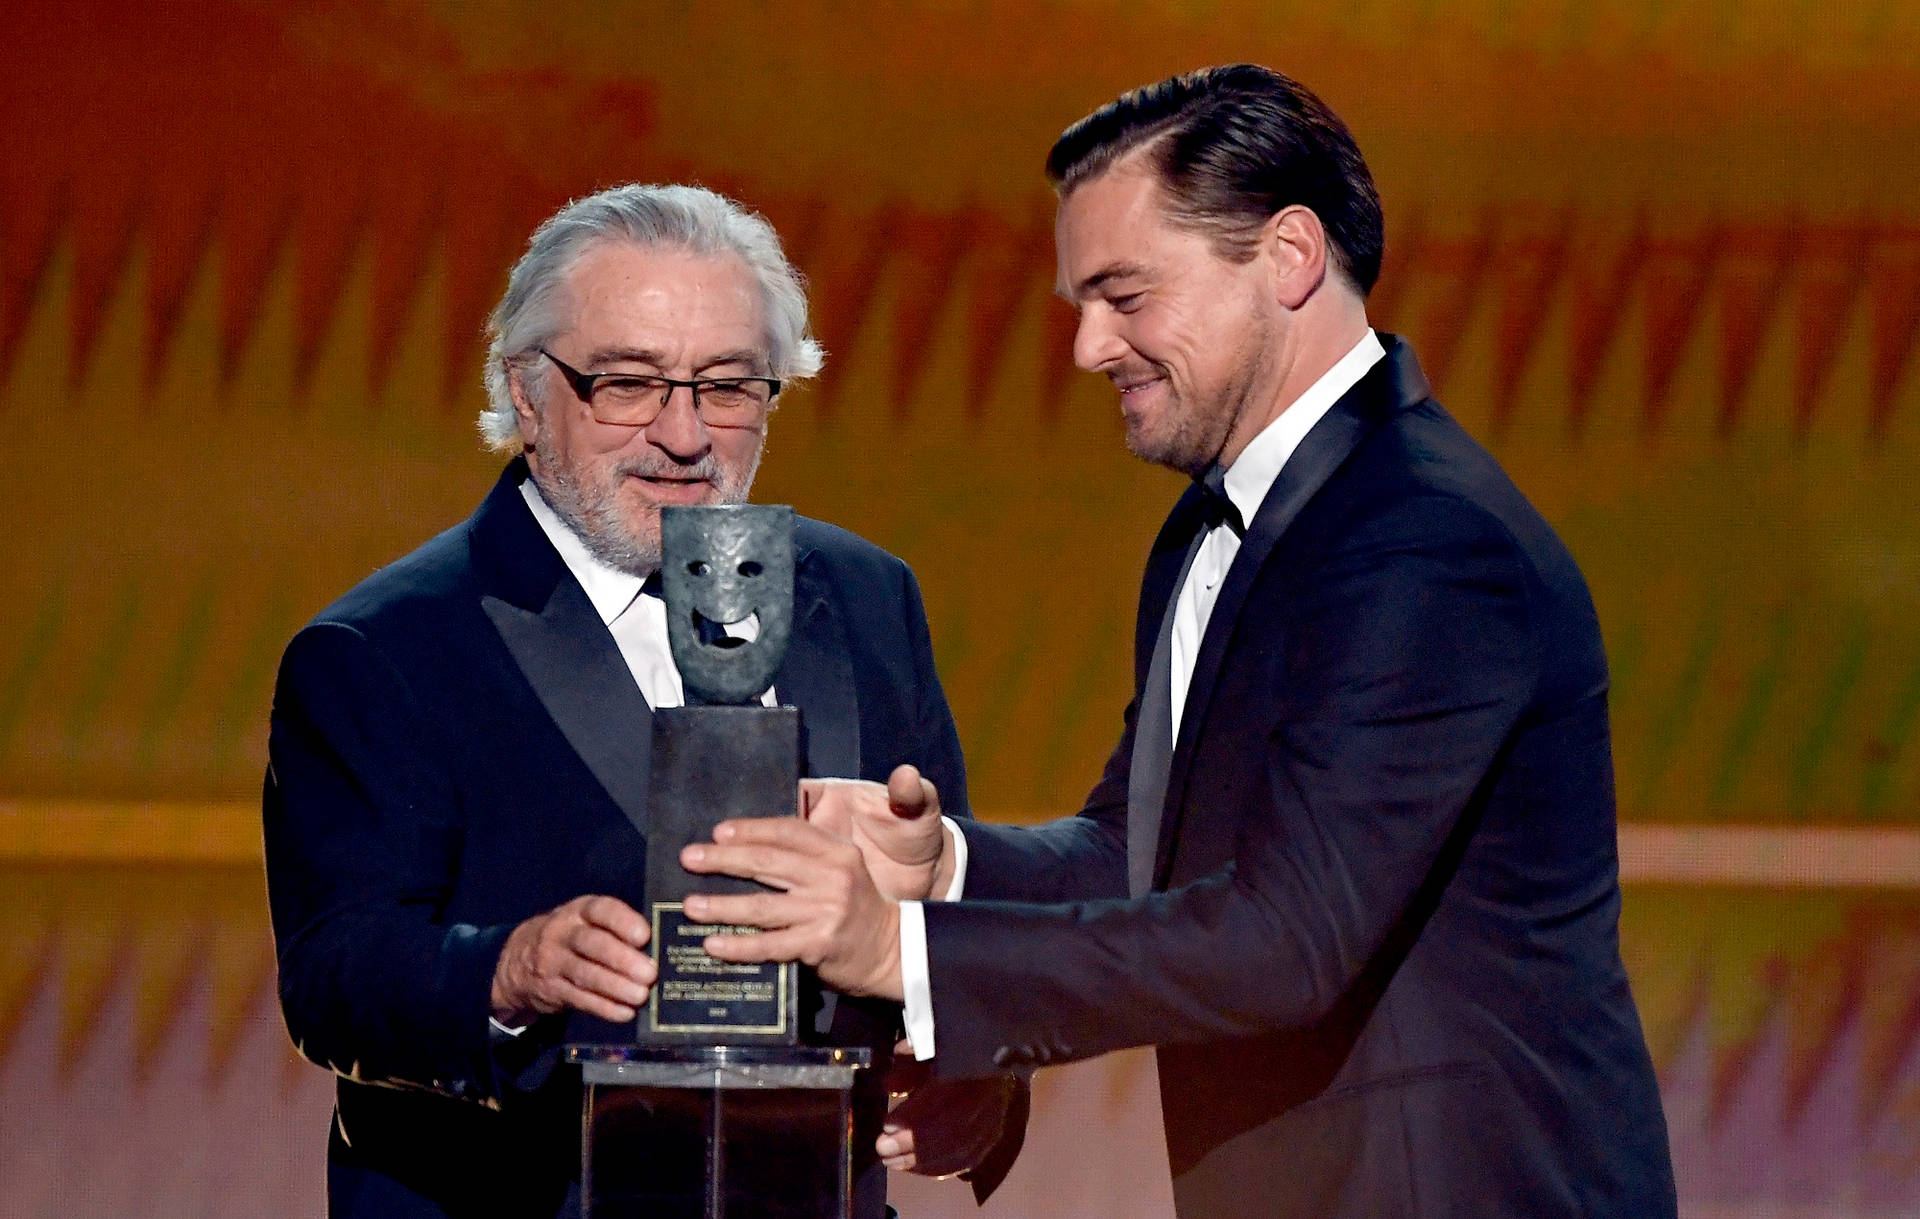 Sag Awards Robert De Niro Background